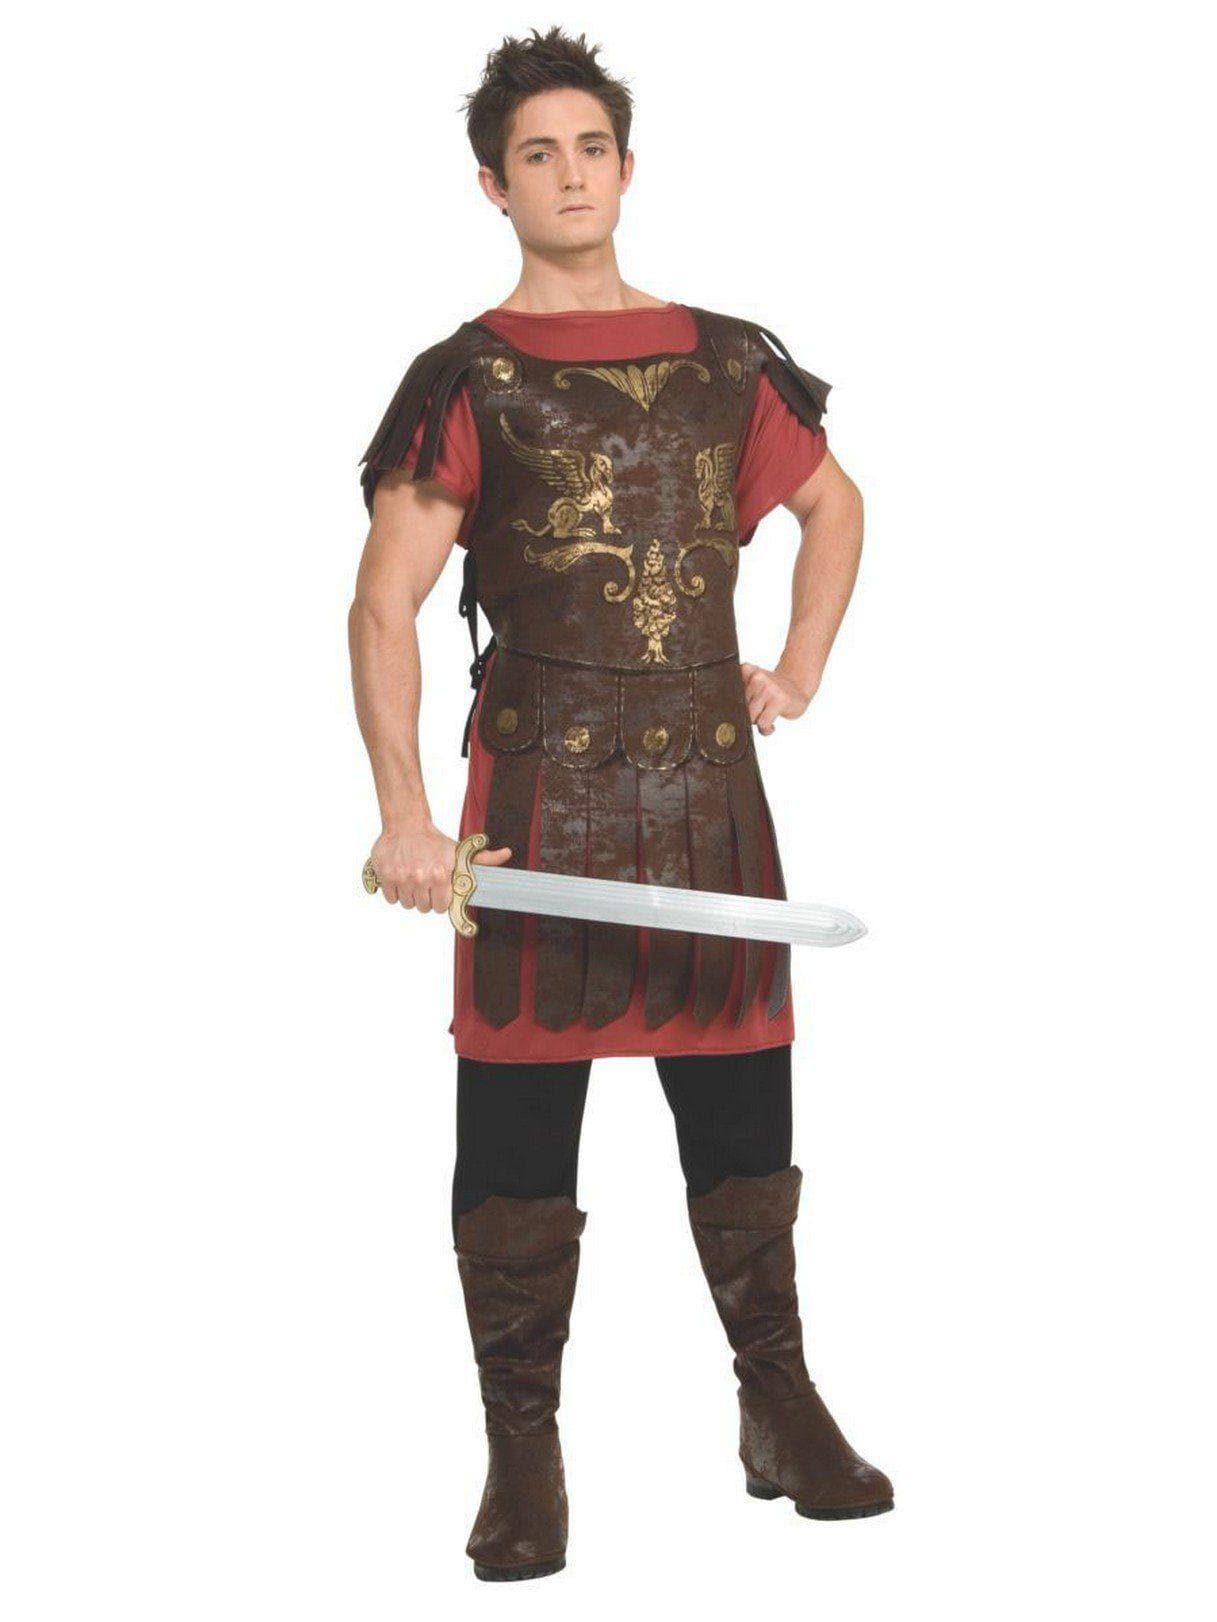 Adult Gladiator Costume - costumes.com